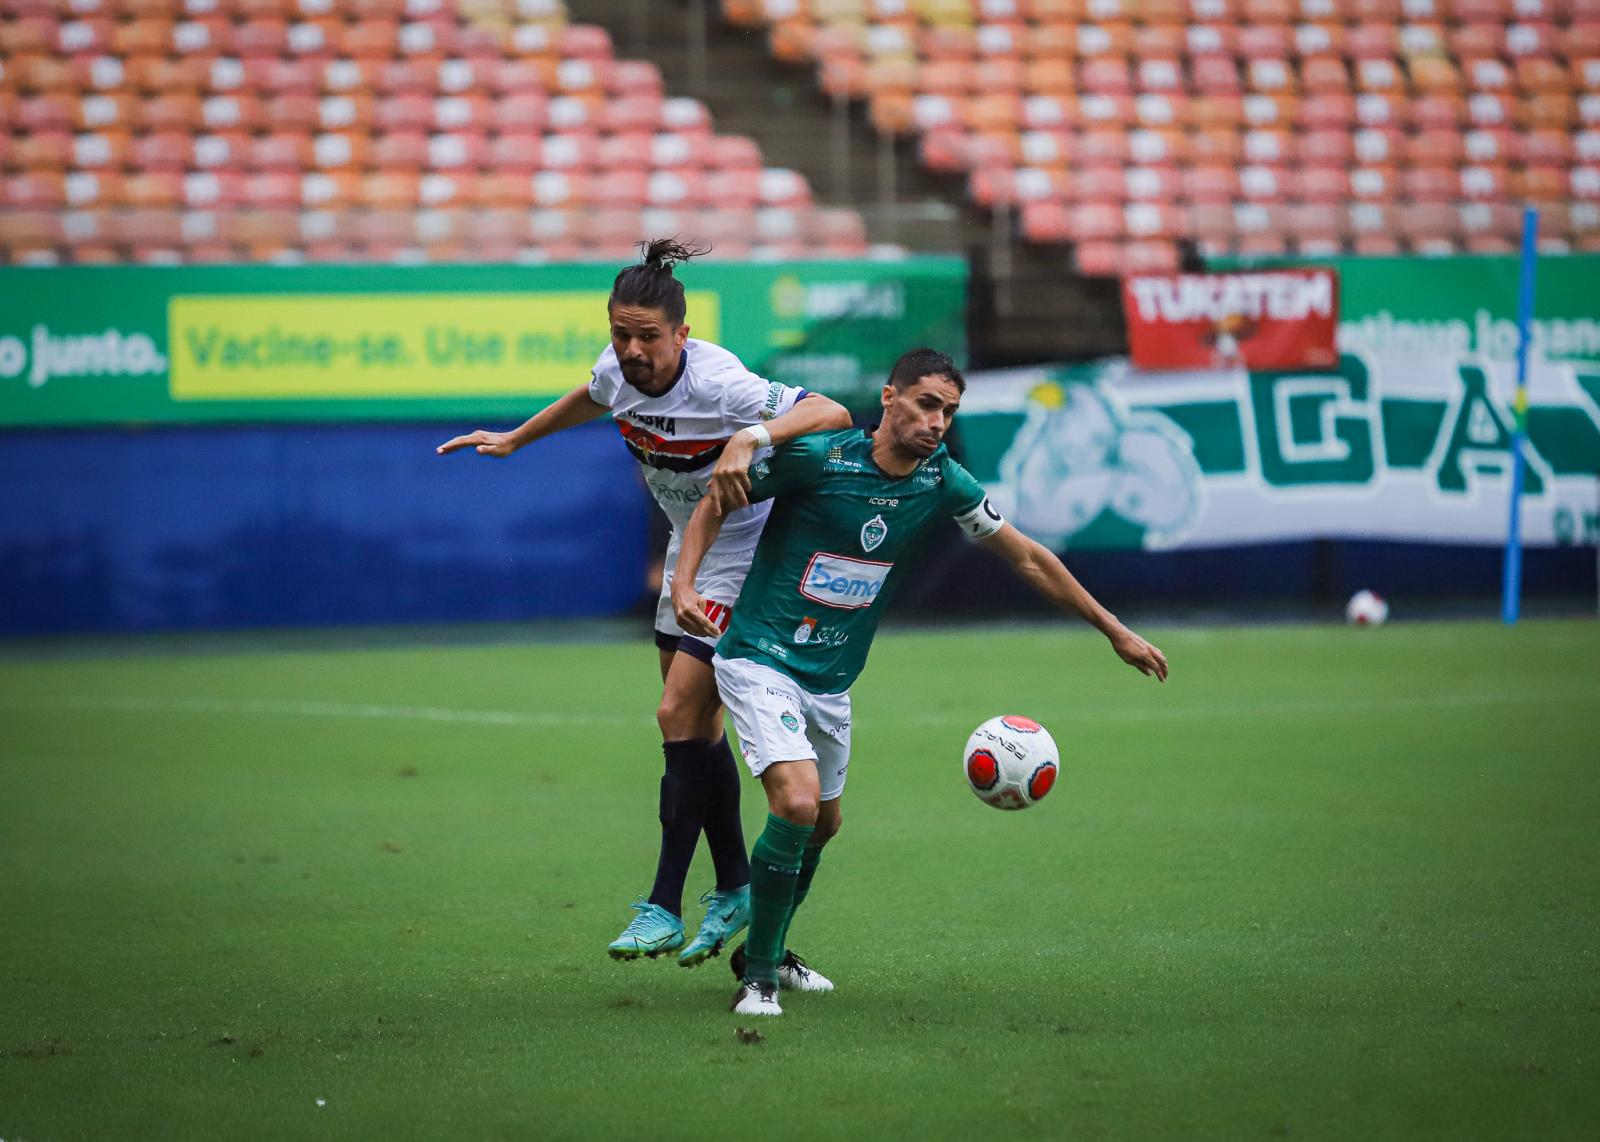 Autor do primeiro gol na temporada, Palmares destaca força coletiva da equipe